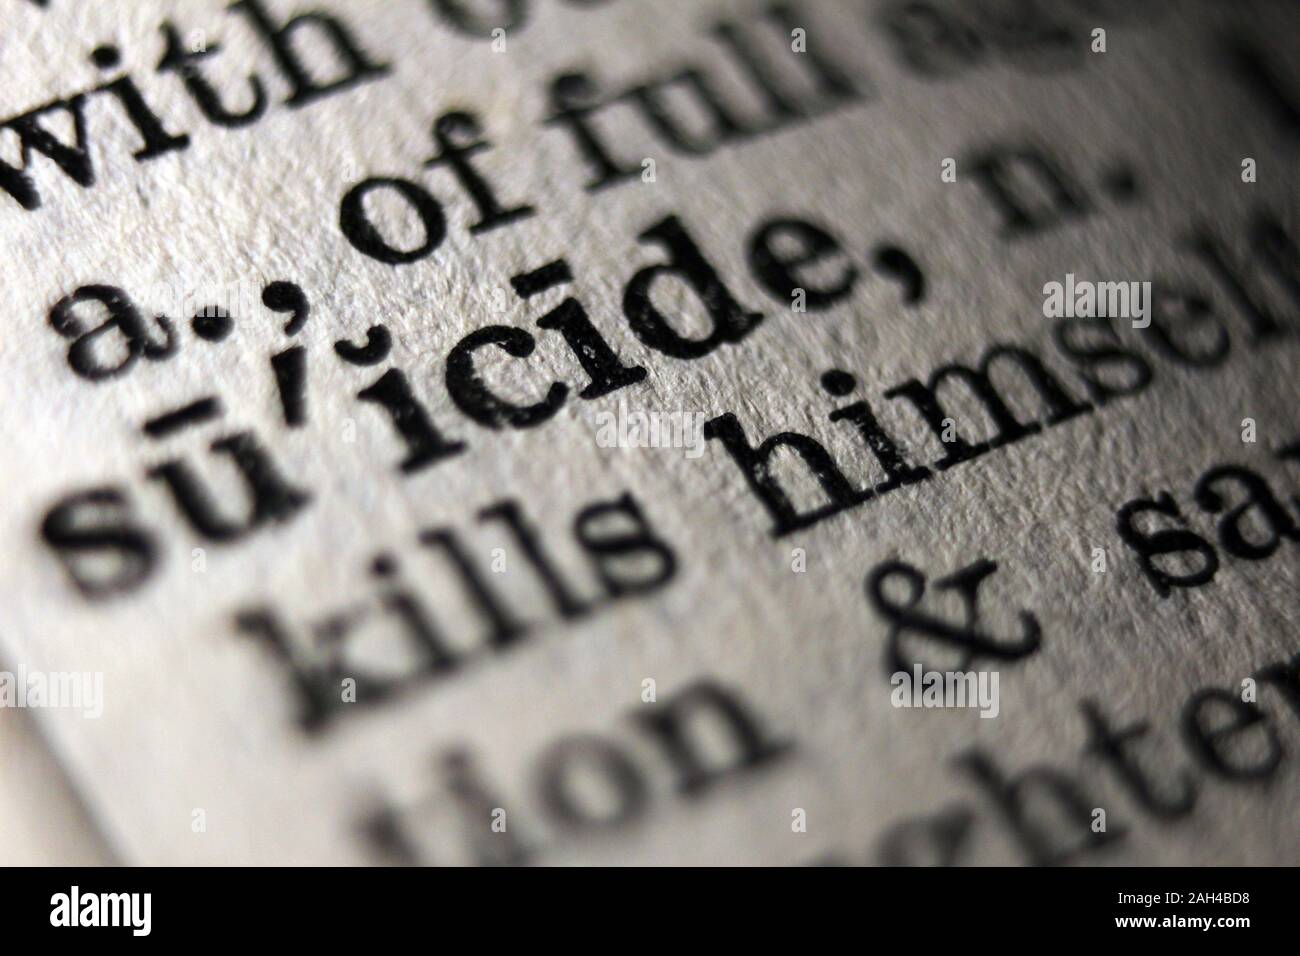 La palabra "suicidio" impresa en la página del libro, close-up Foto de stock